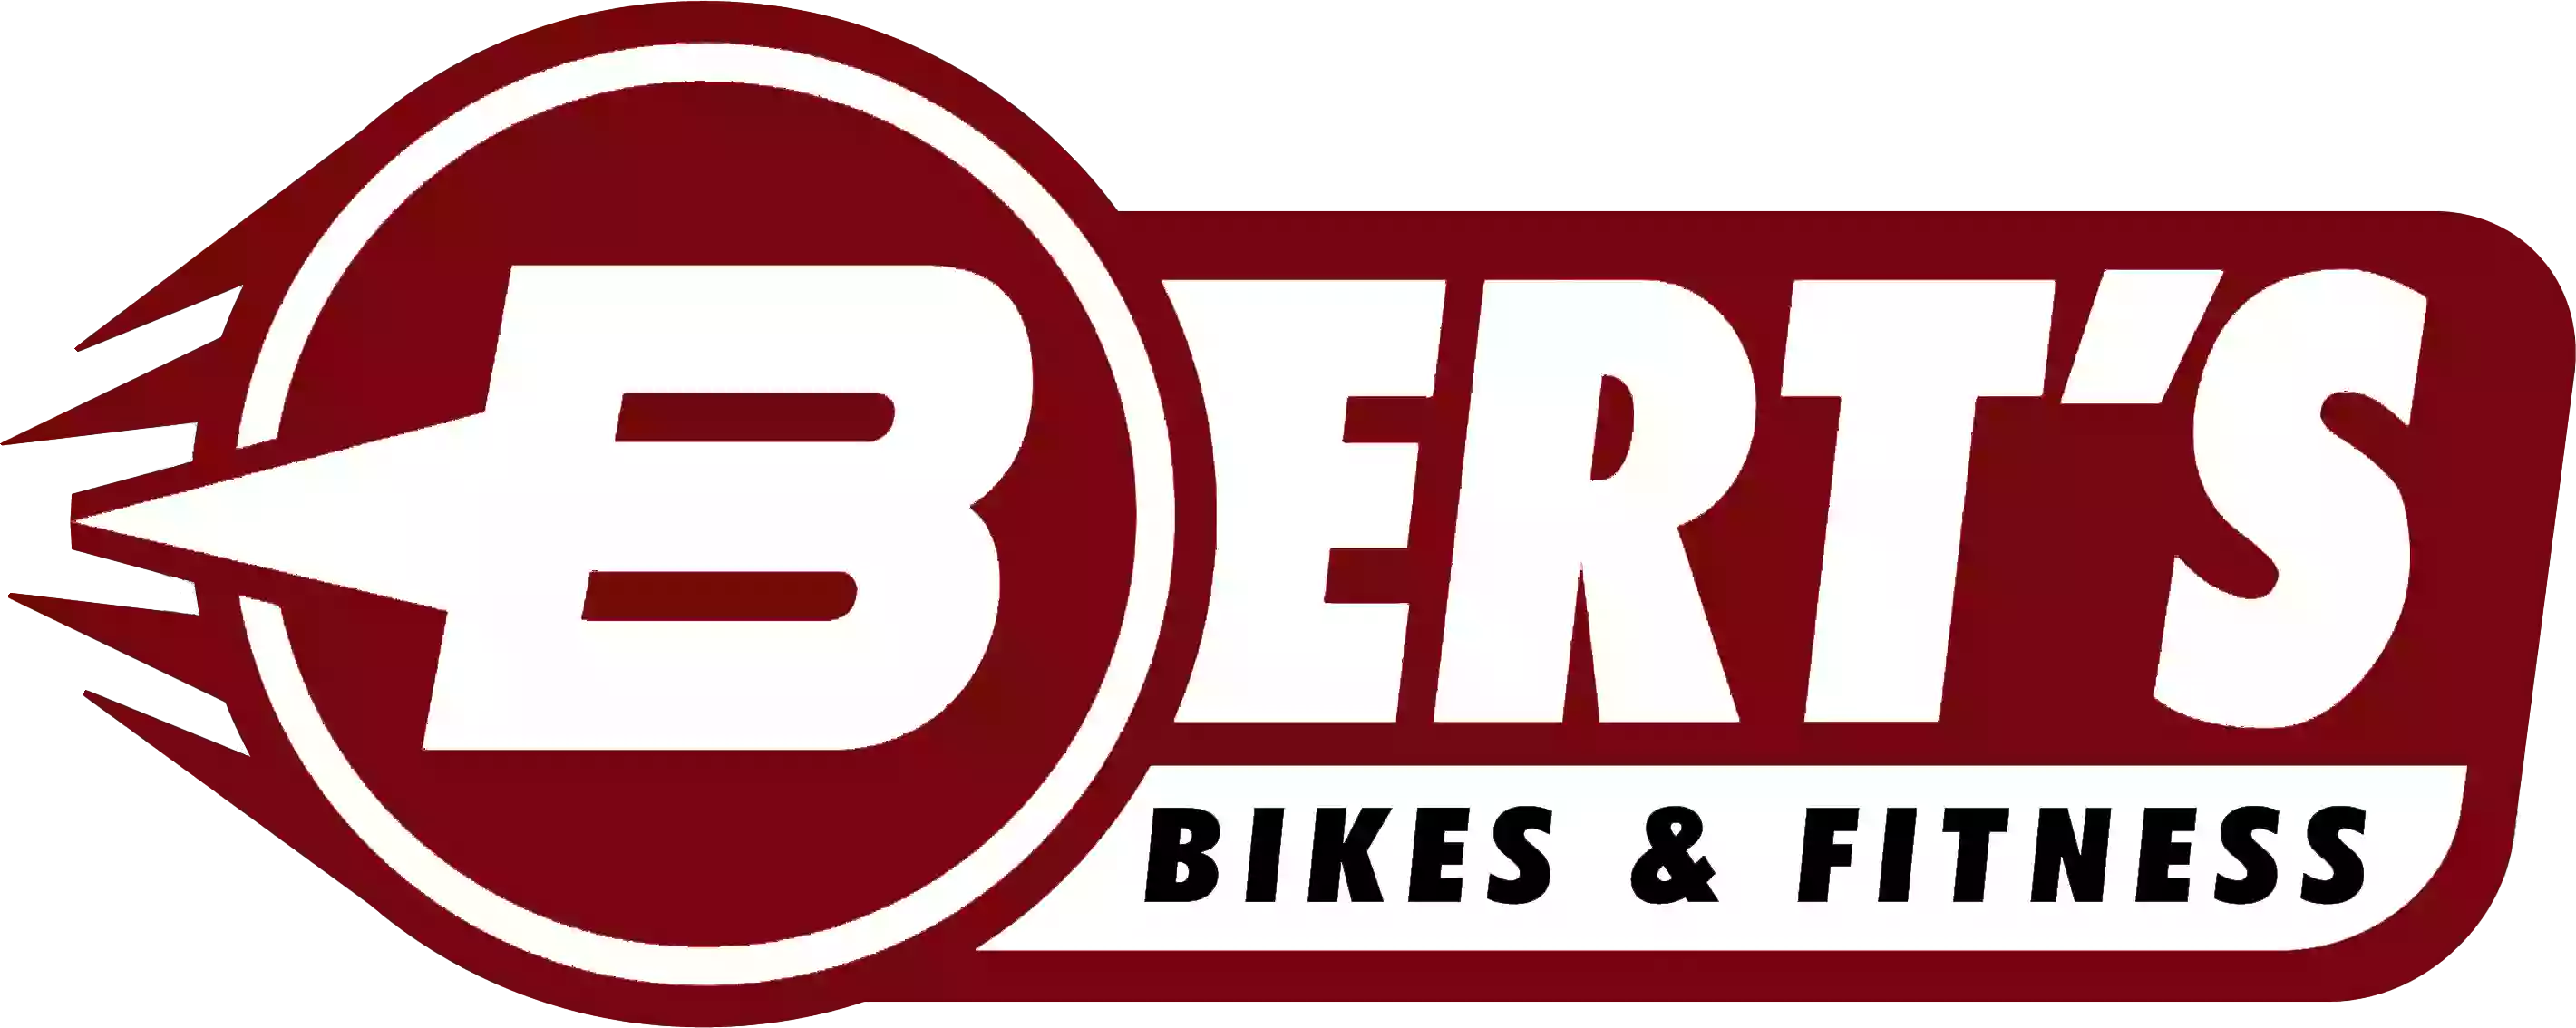 Bert's Bikes & Fitness